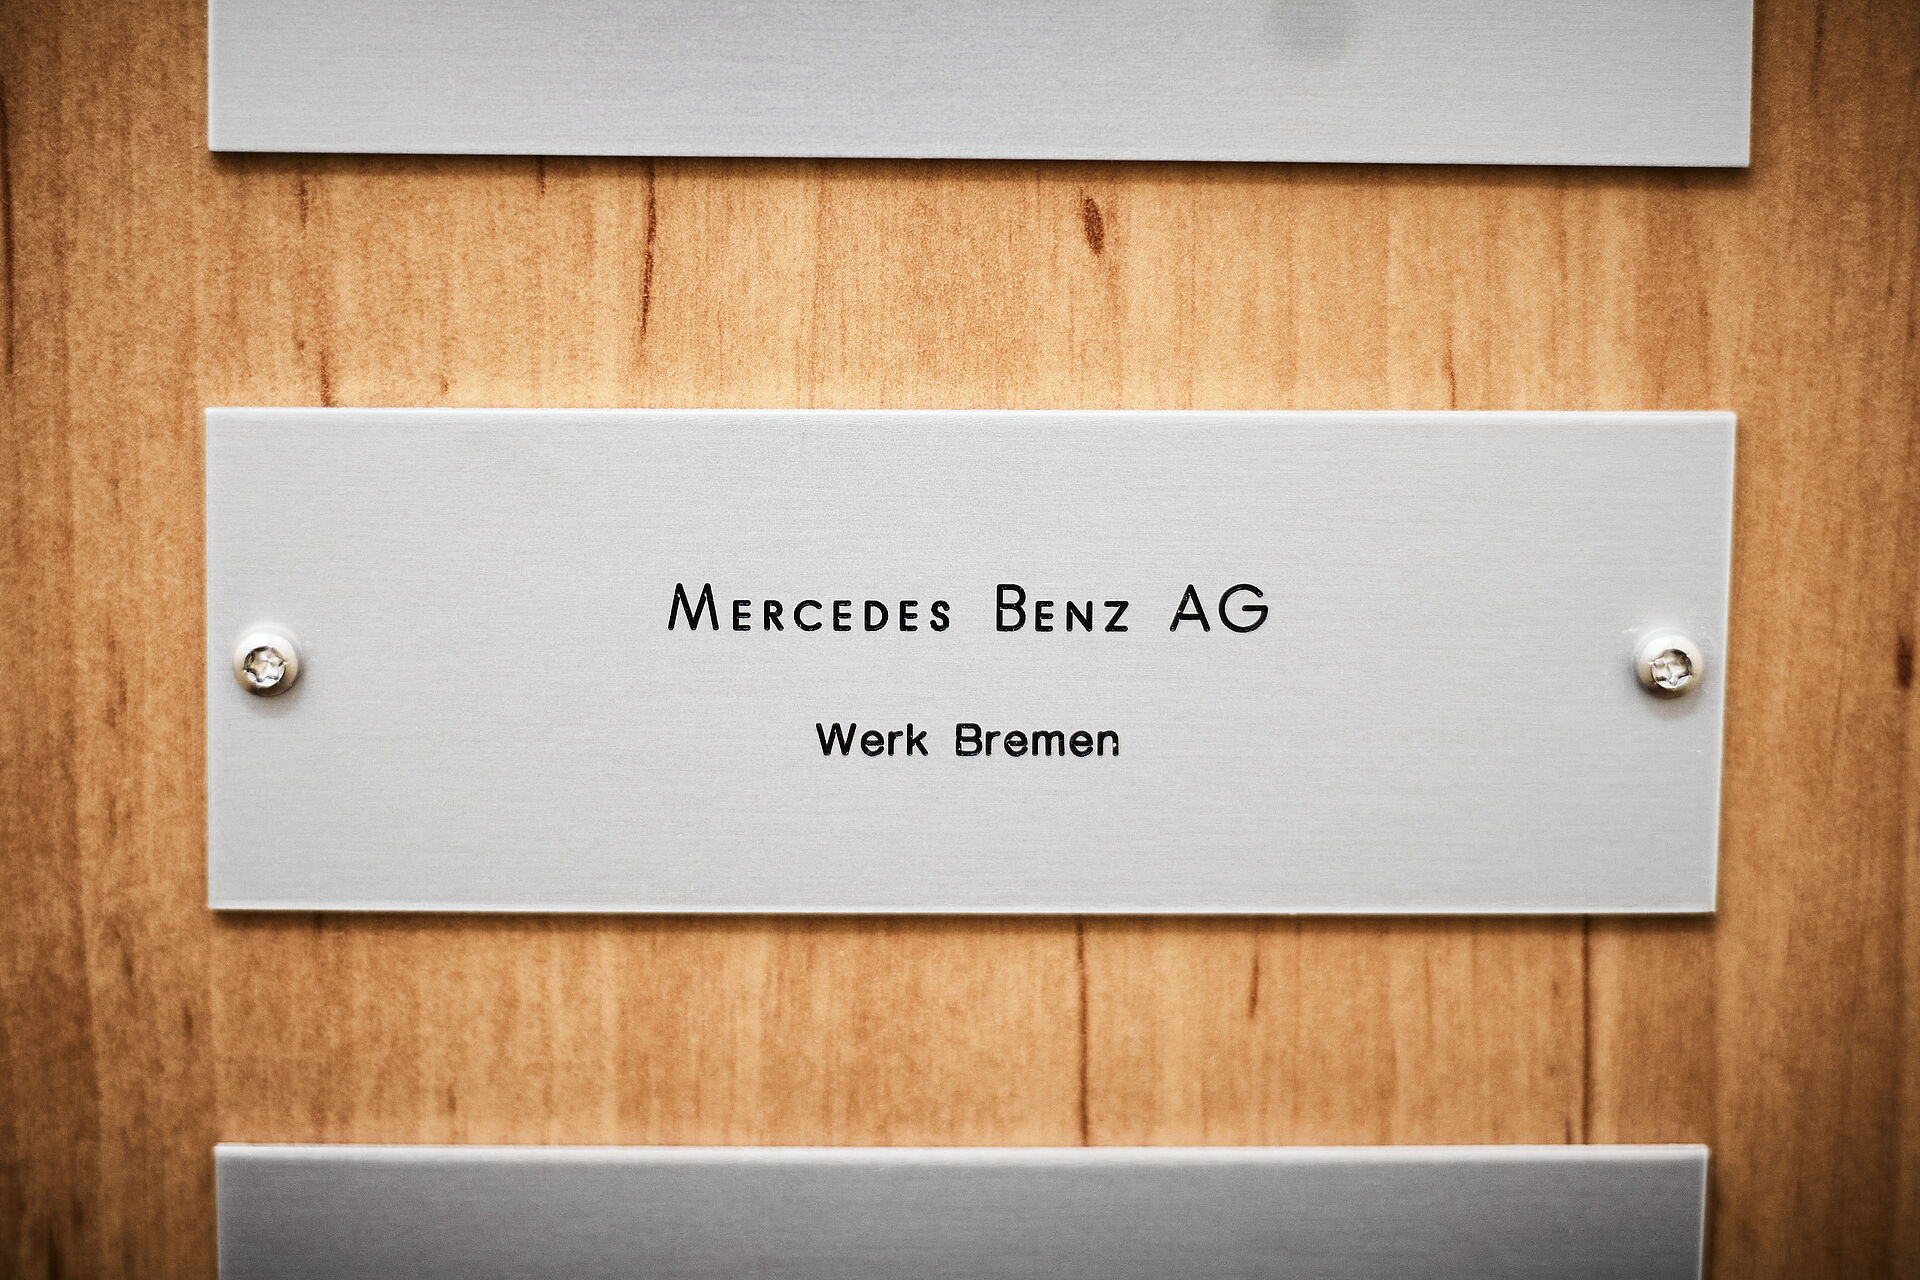 Tür Schild mit der Aufschrift "Mercedes Benz AG"